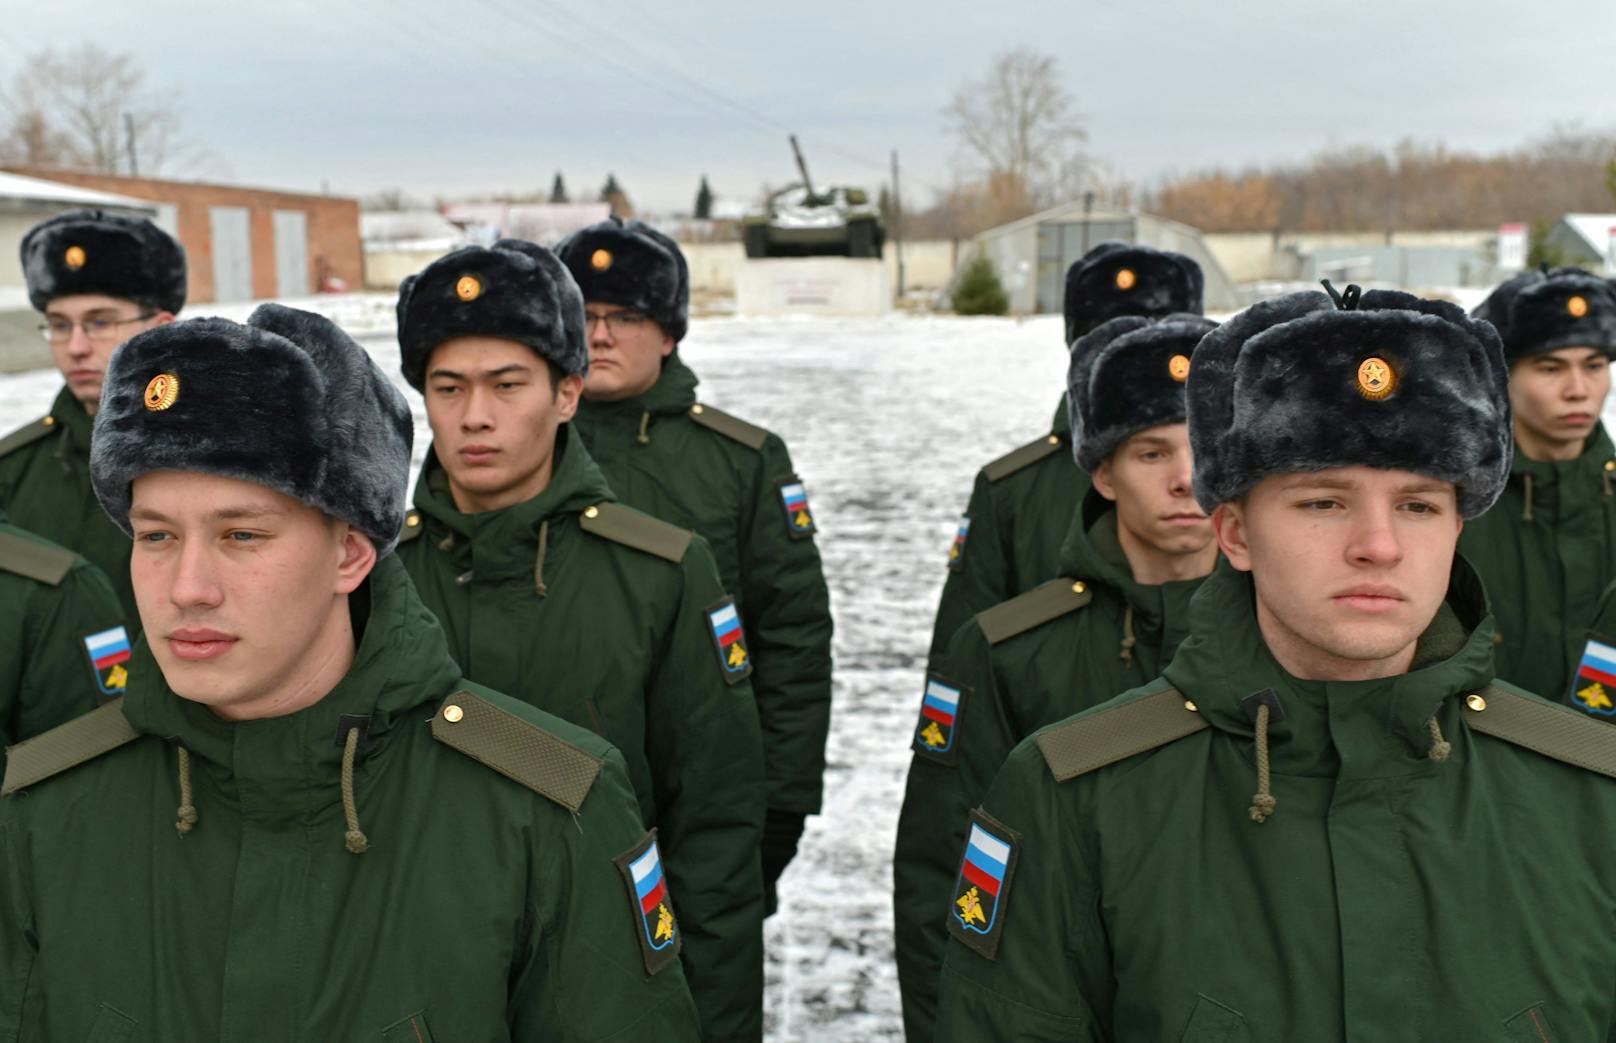 Laut dem ukrainischen Verteidigungsminister ist die russische Armee in einem geschwächten Zustand.